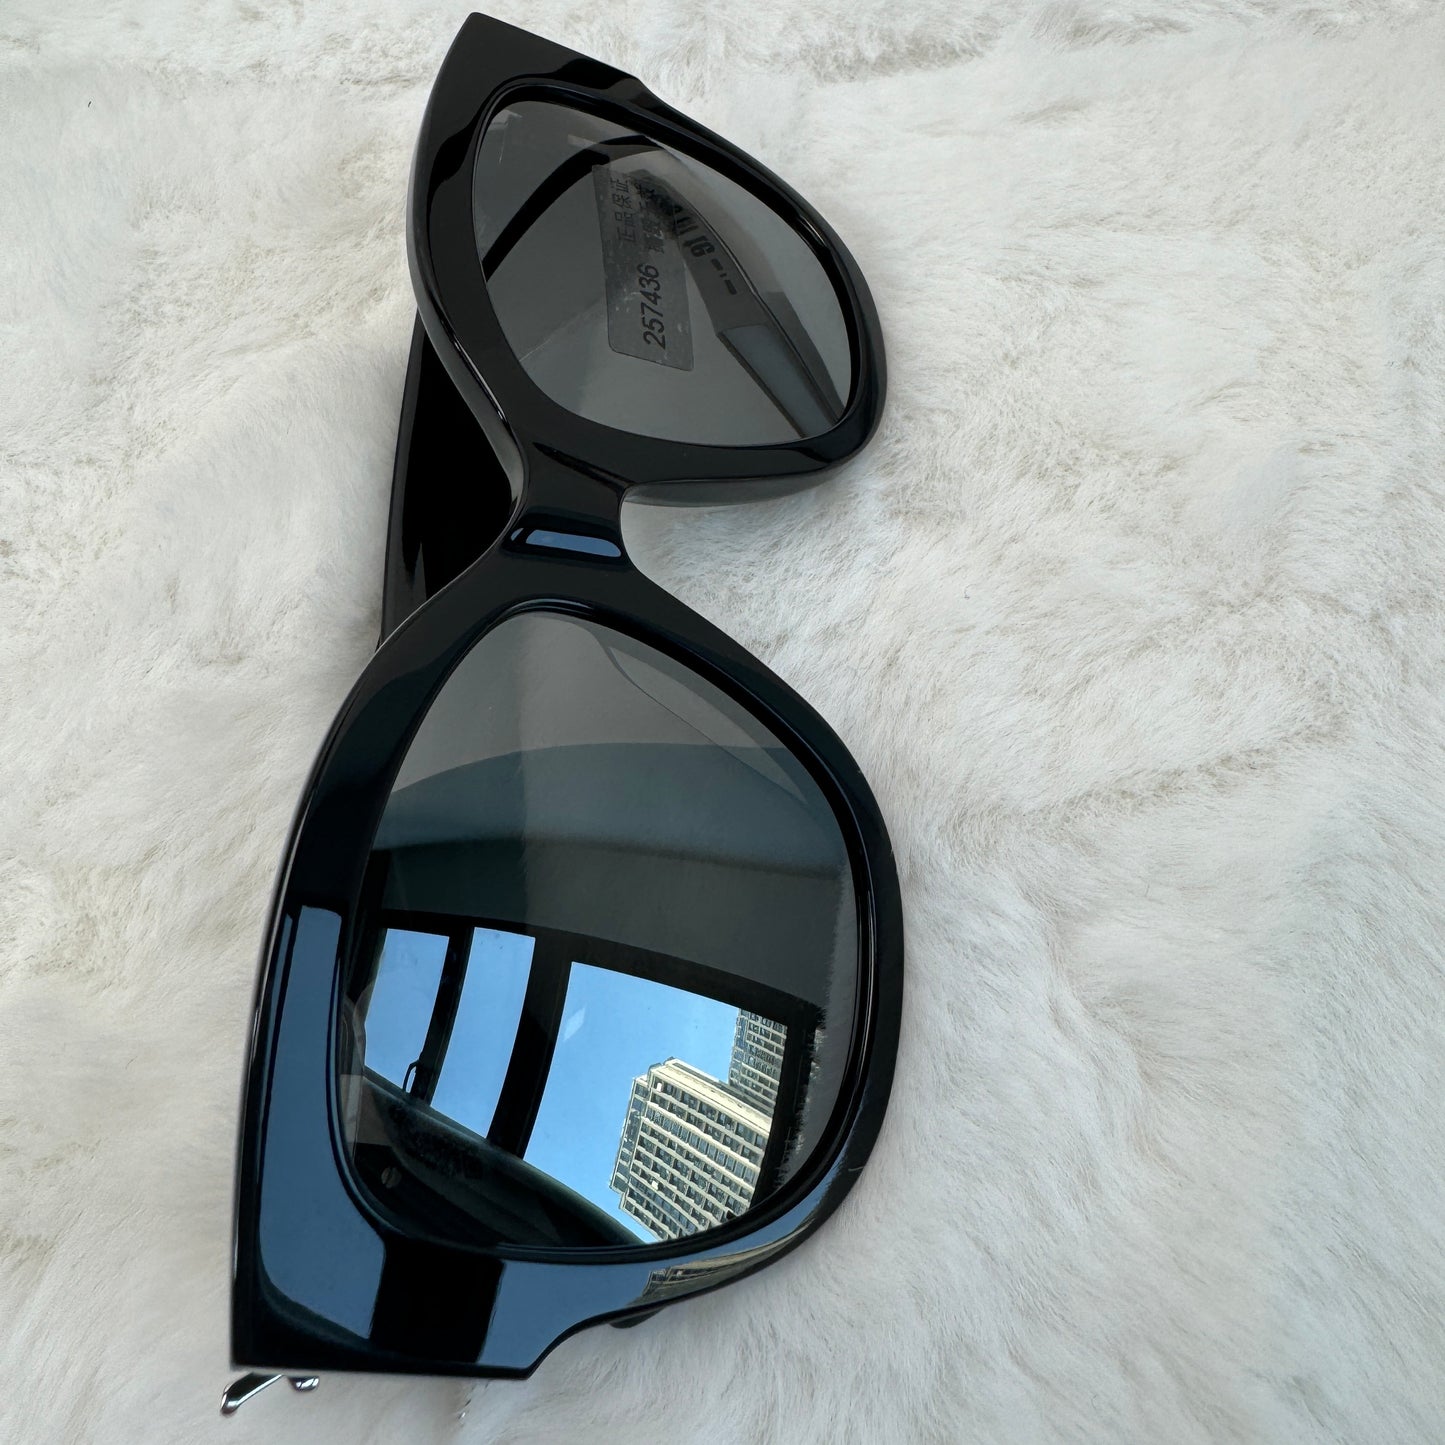 【DEAL】Pre-owned Saint Laurent Black&Silver SLM95 002 Sunglasses-HZ